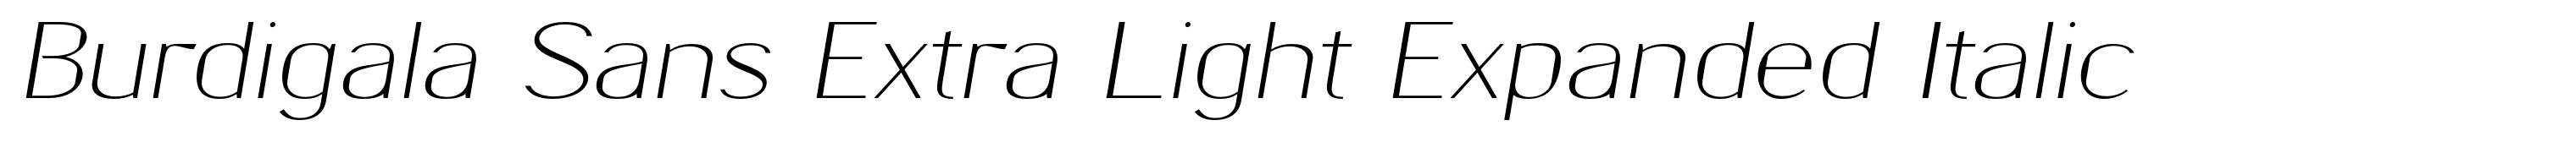 Burdigala Sans Extra Light Expanded Italic